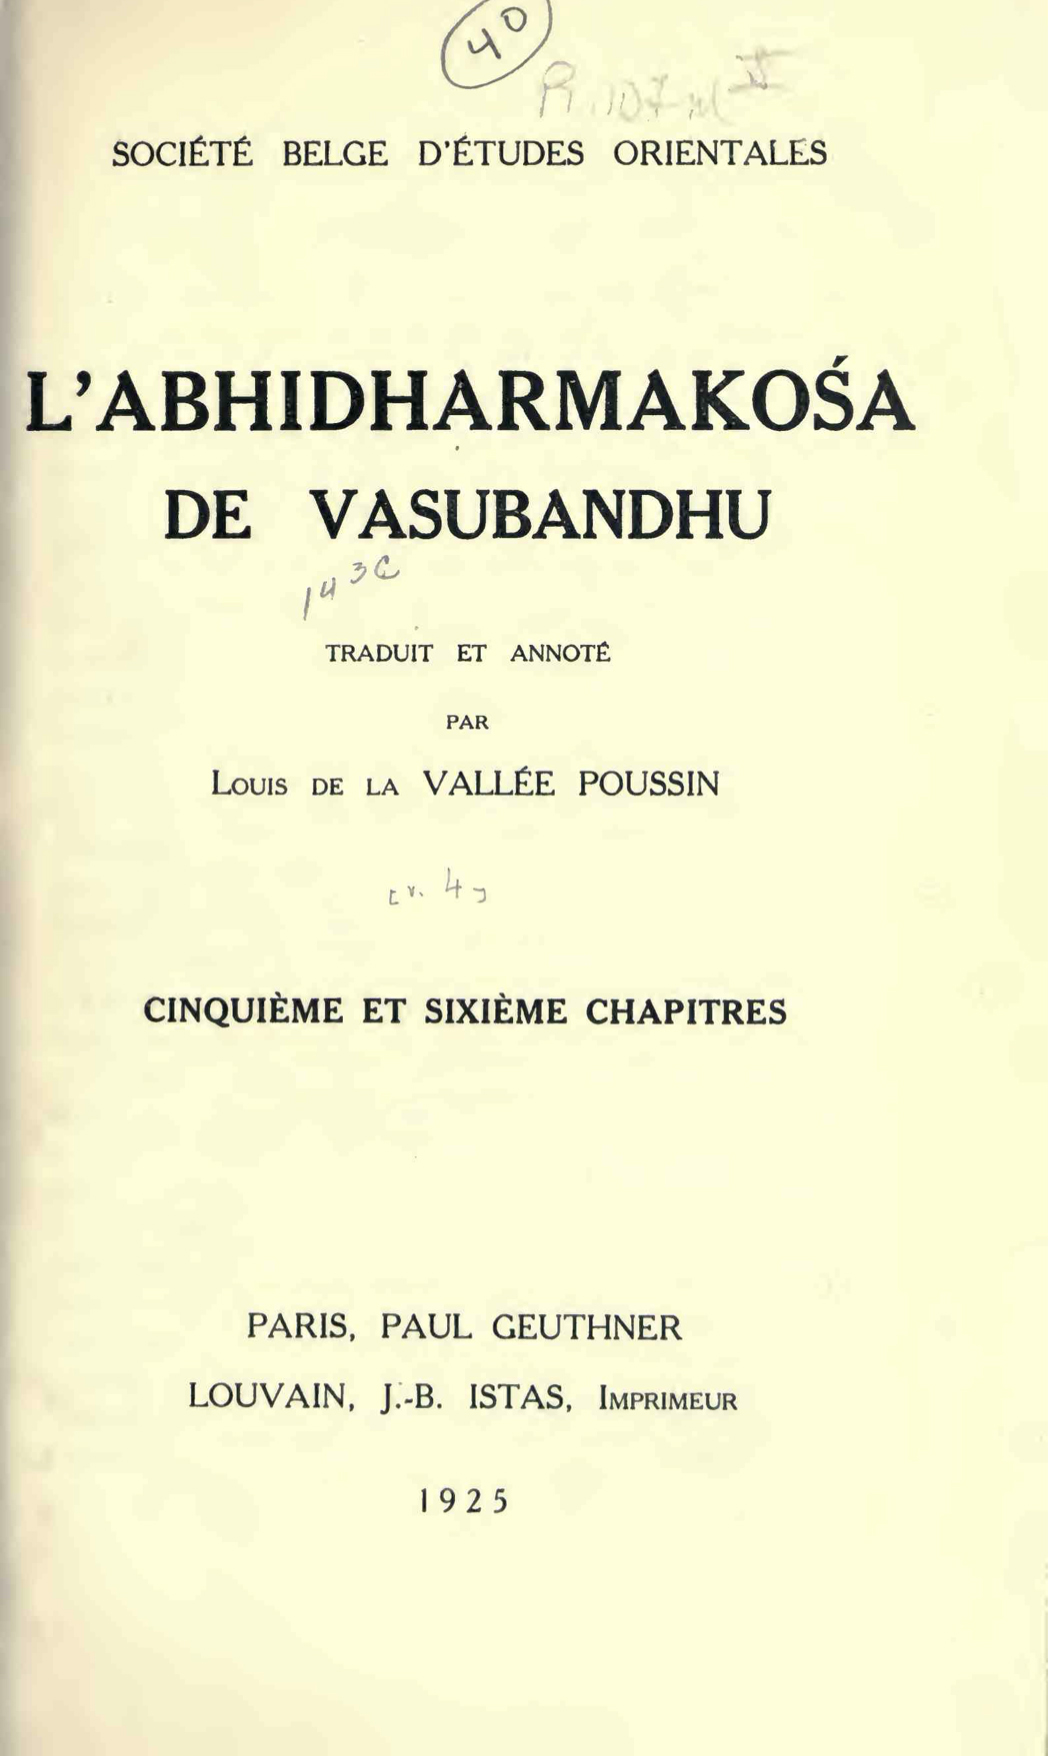 L'Abhidharmakośa de Vasubandhu Cinquième et Sixième Chapitres-front.jpg